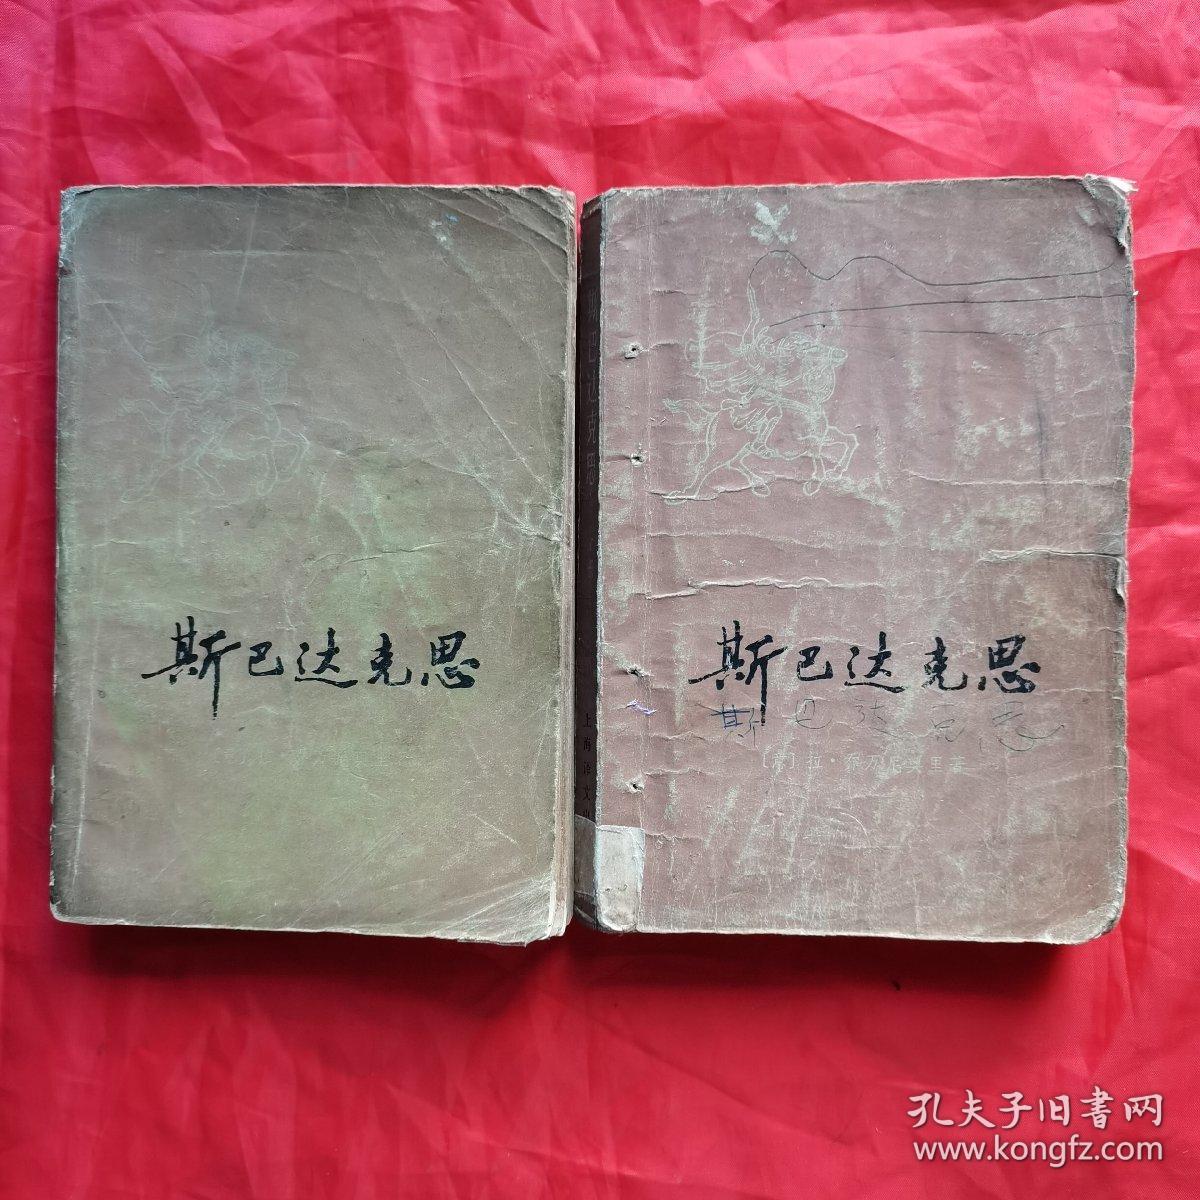 斯巴达克思（上、下册）。【上海译文出版社 出版，江苏人民出版社 重印，1978年，一版一印】。私藏書籍，共计2册/合售。